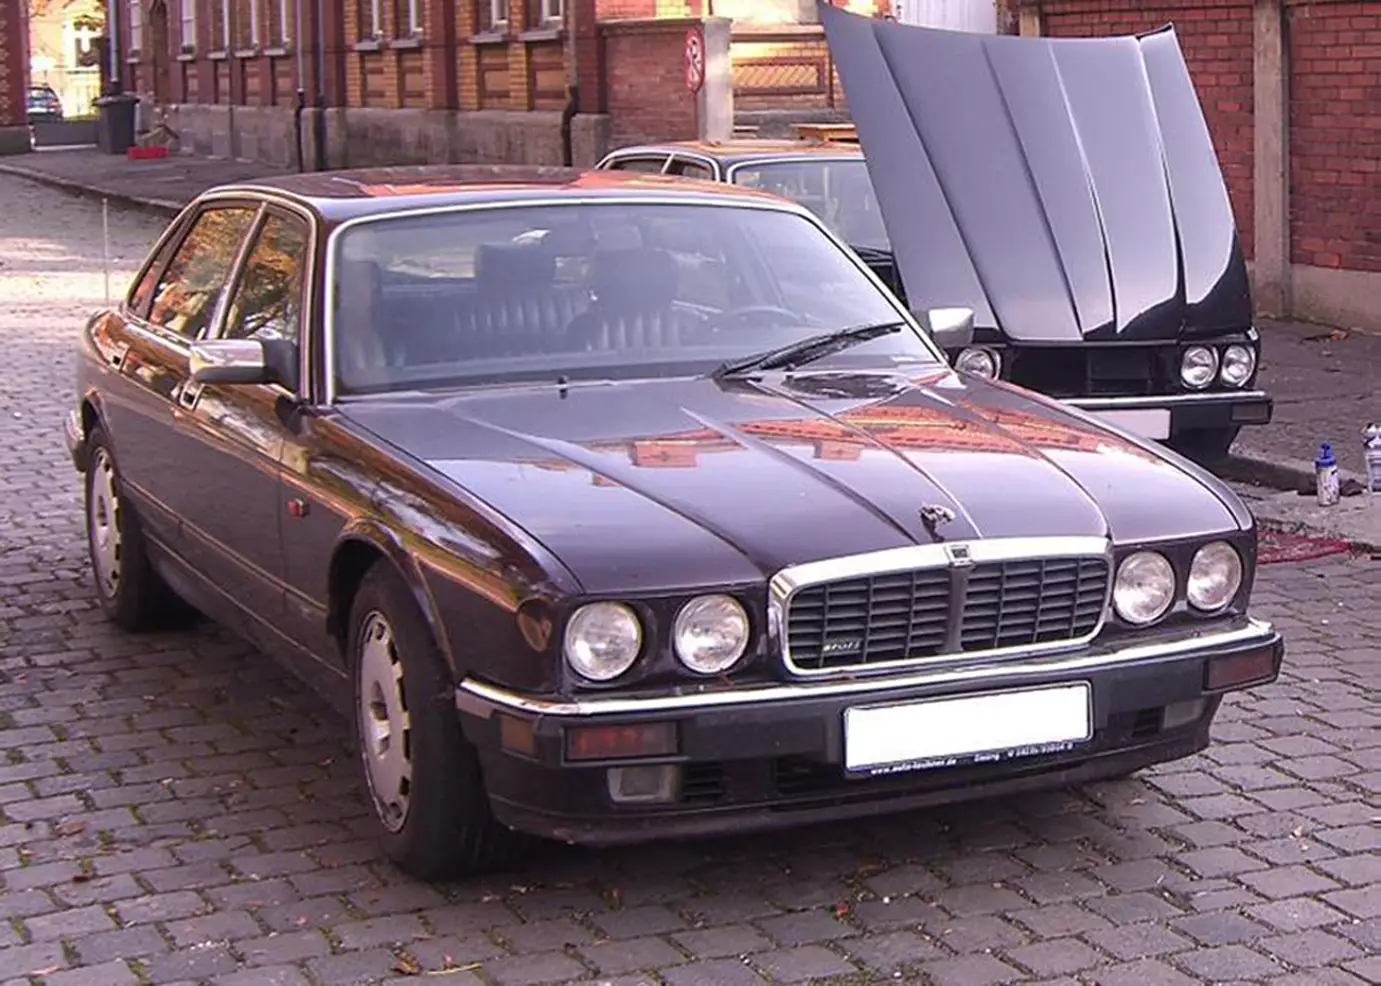 The suspect's 1993 Jaguar XJR 6.